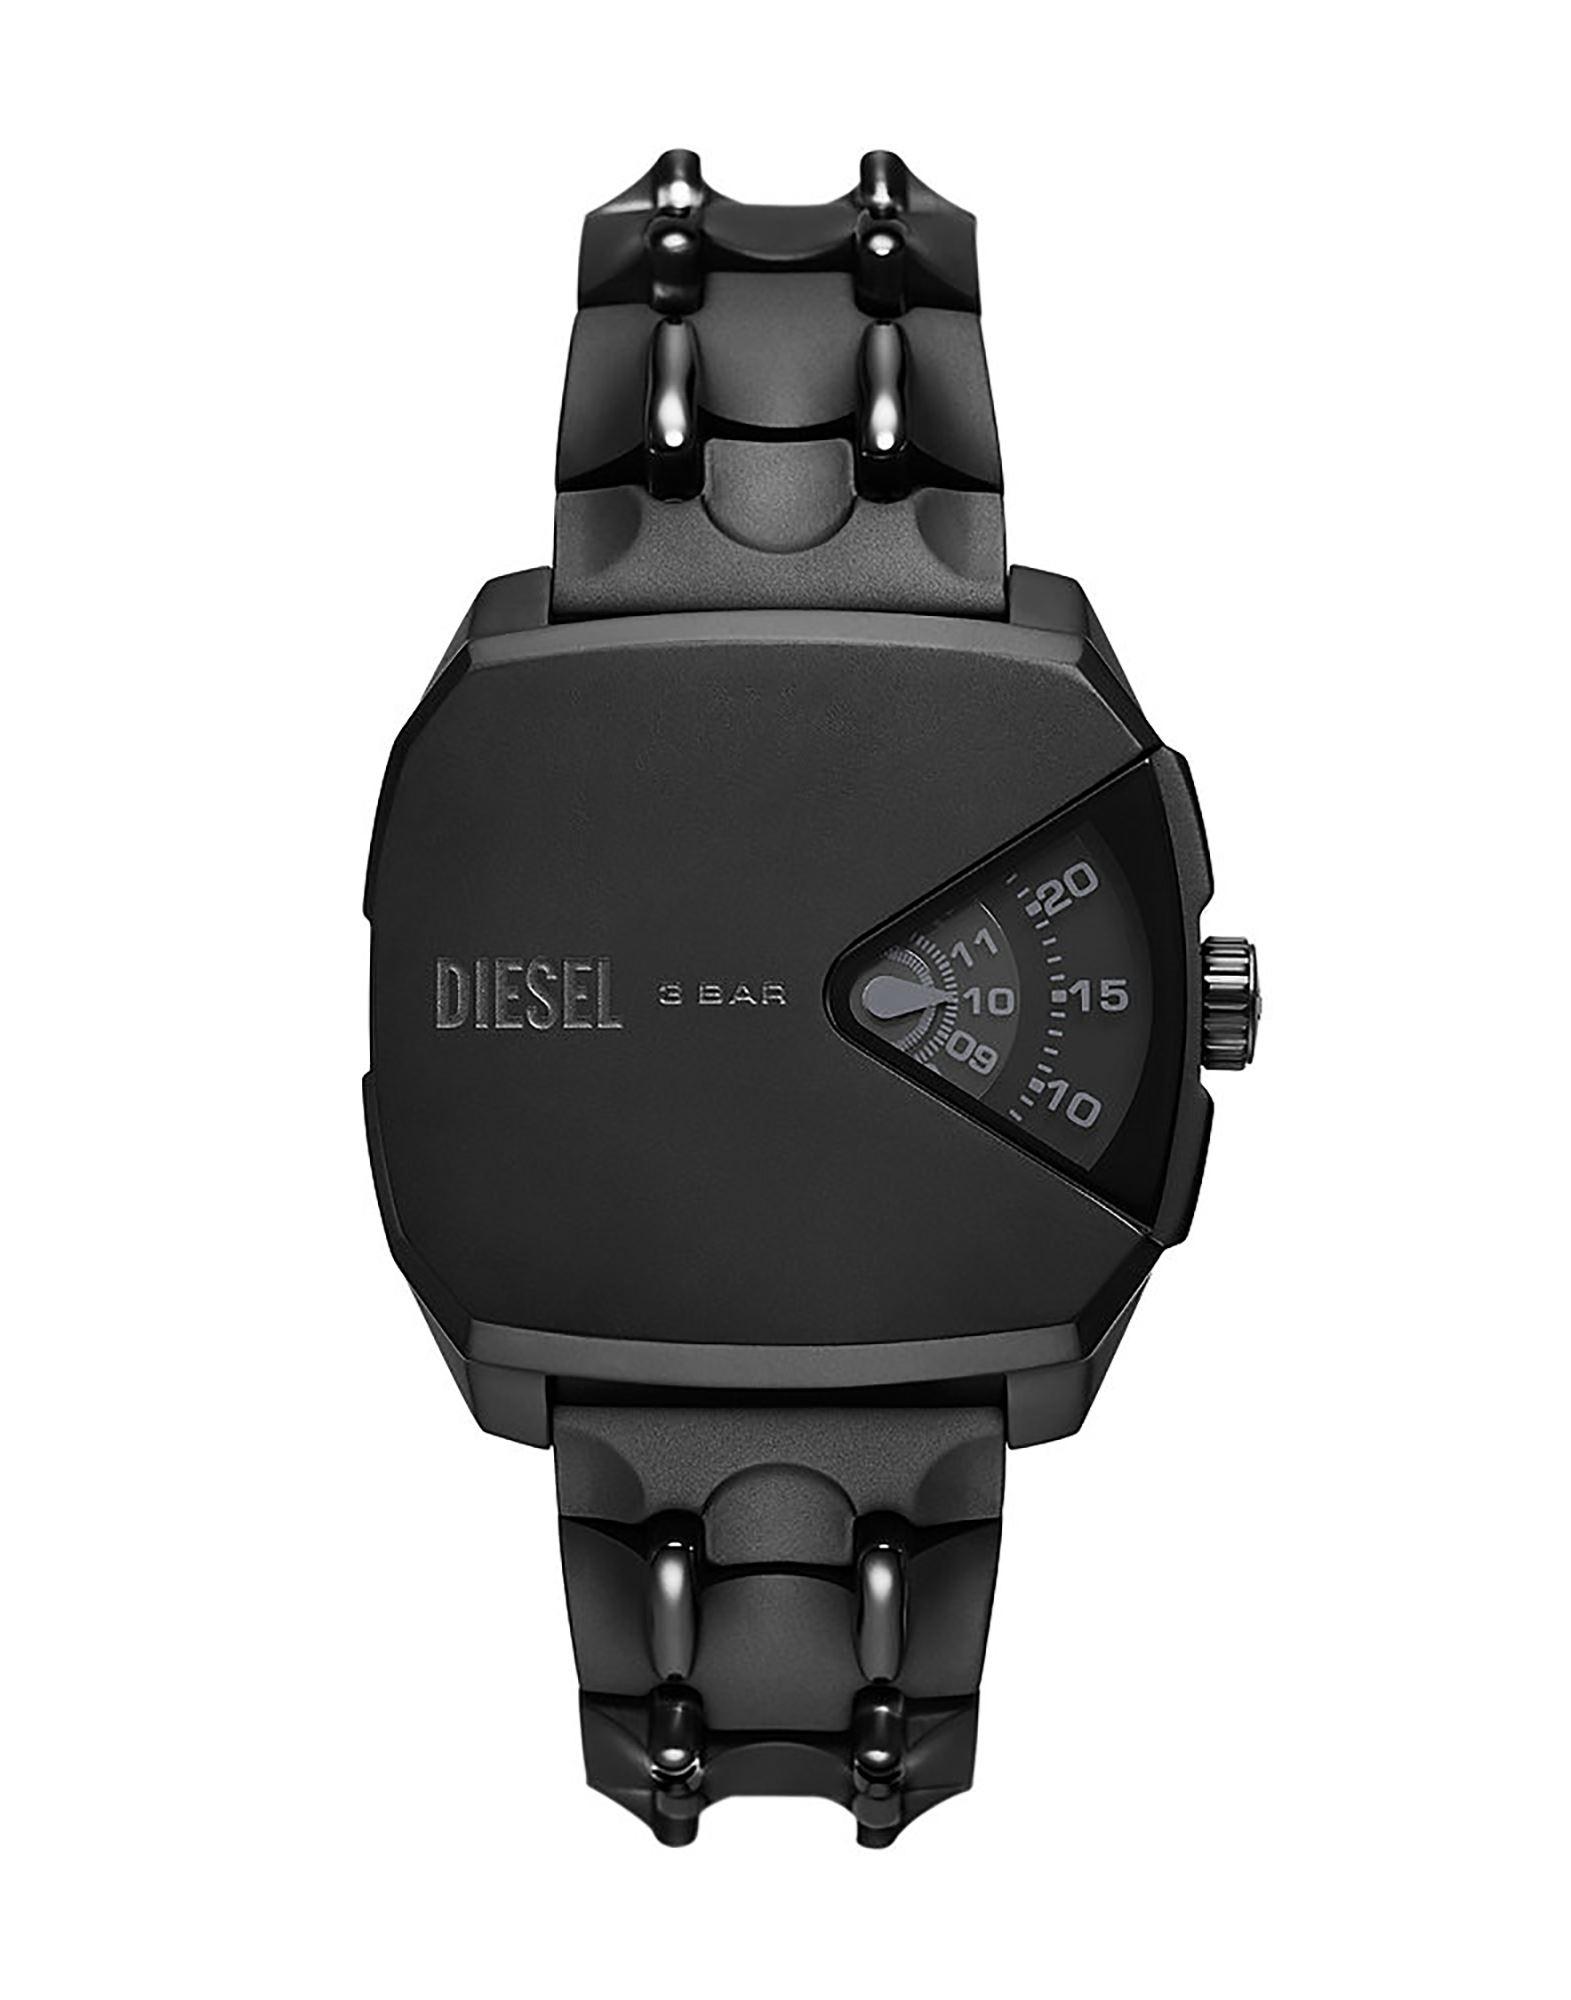 Diesel Black Watches for Men & Women